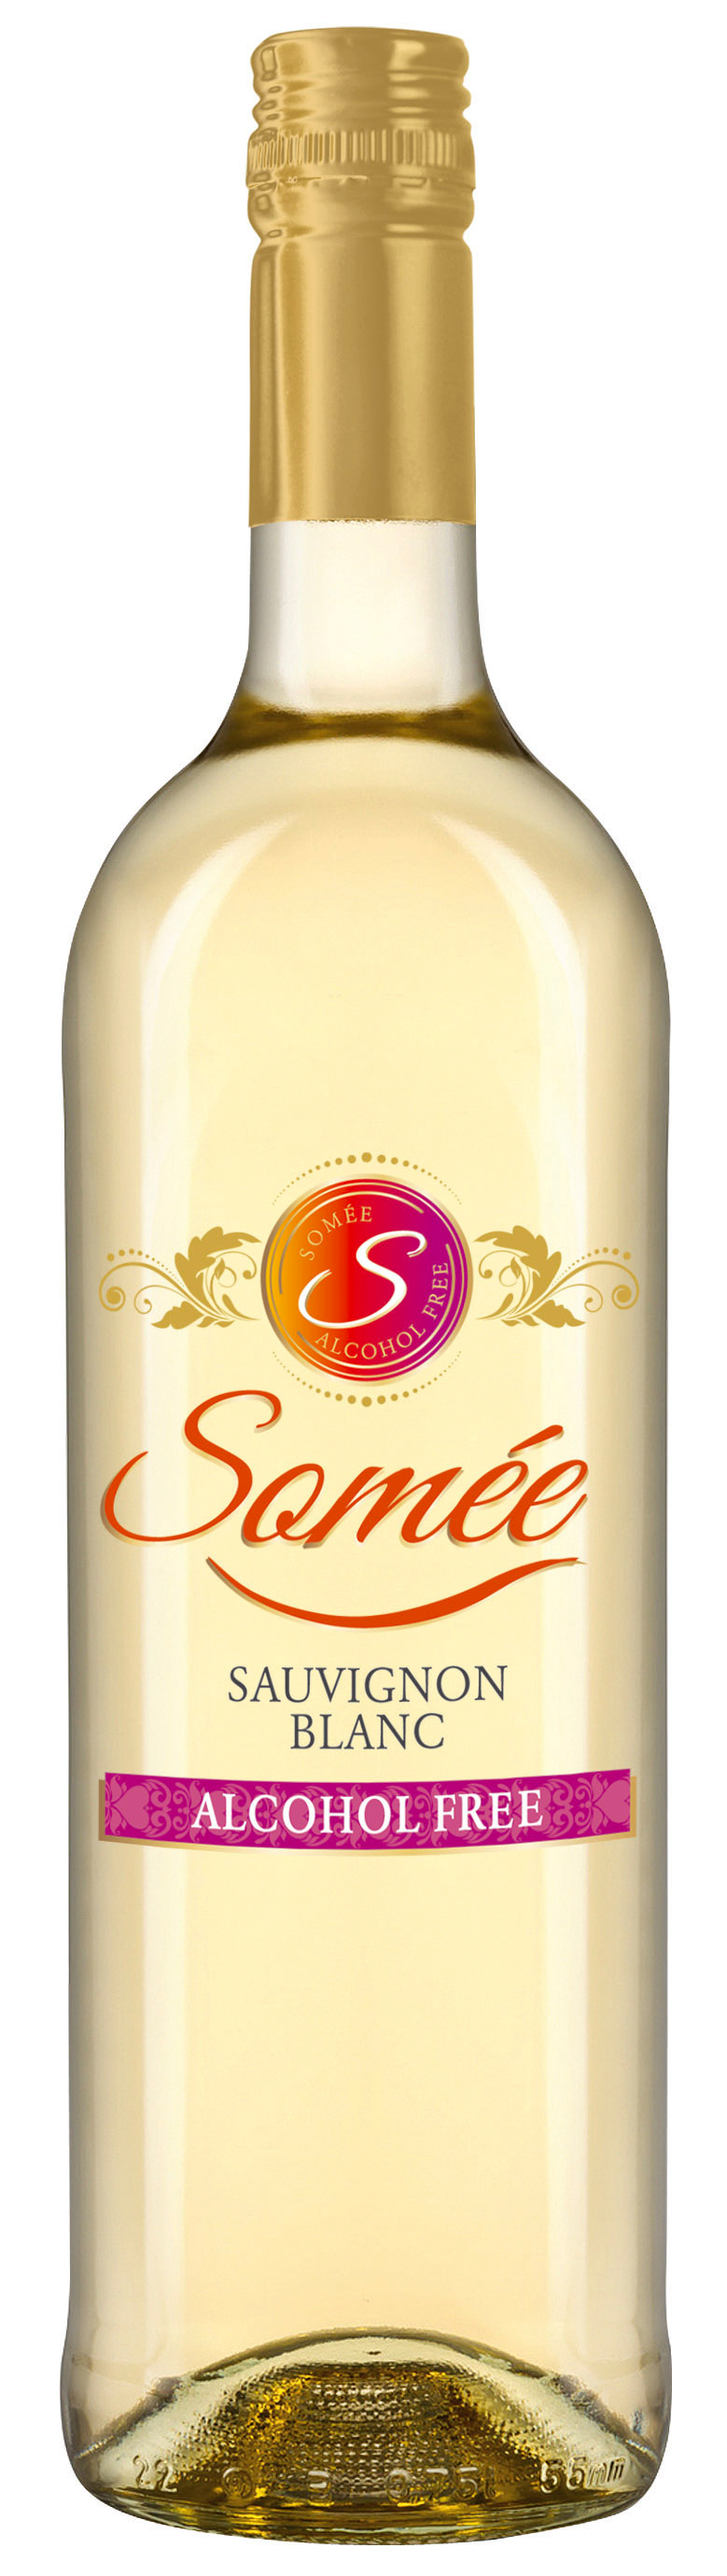 Somée Sauvignon Blanc alkoholfreier Weißwein 0,75l